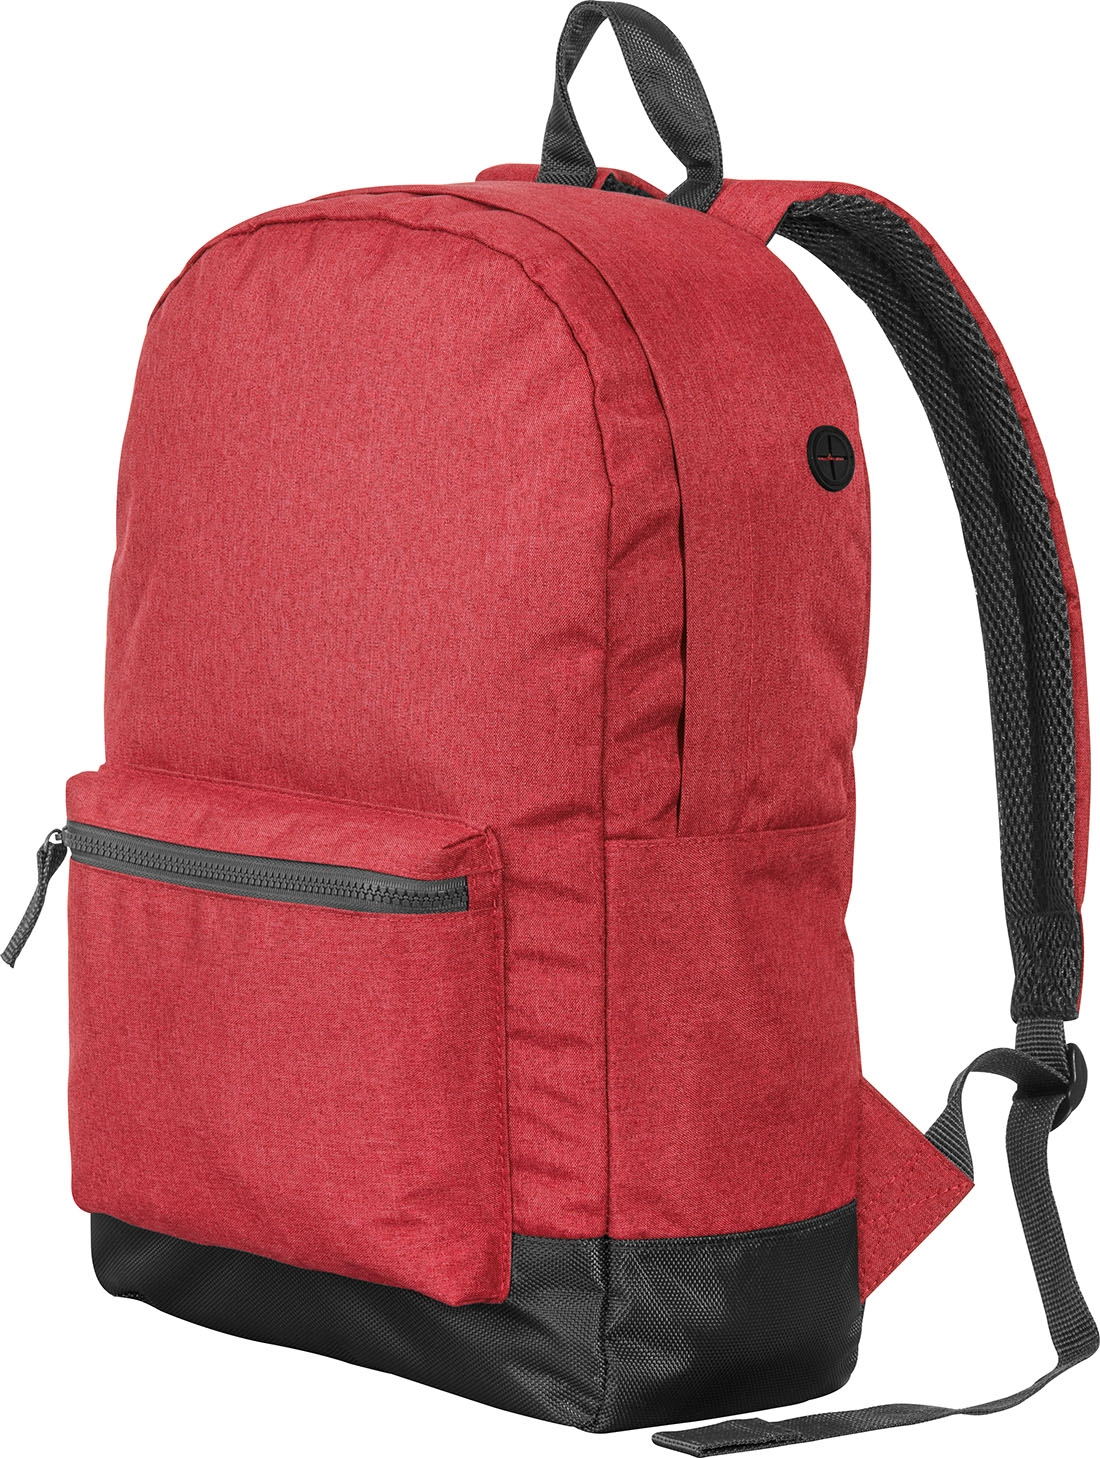 Plecak z poliestru GM-60389-05 czerwony